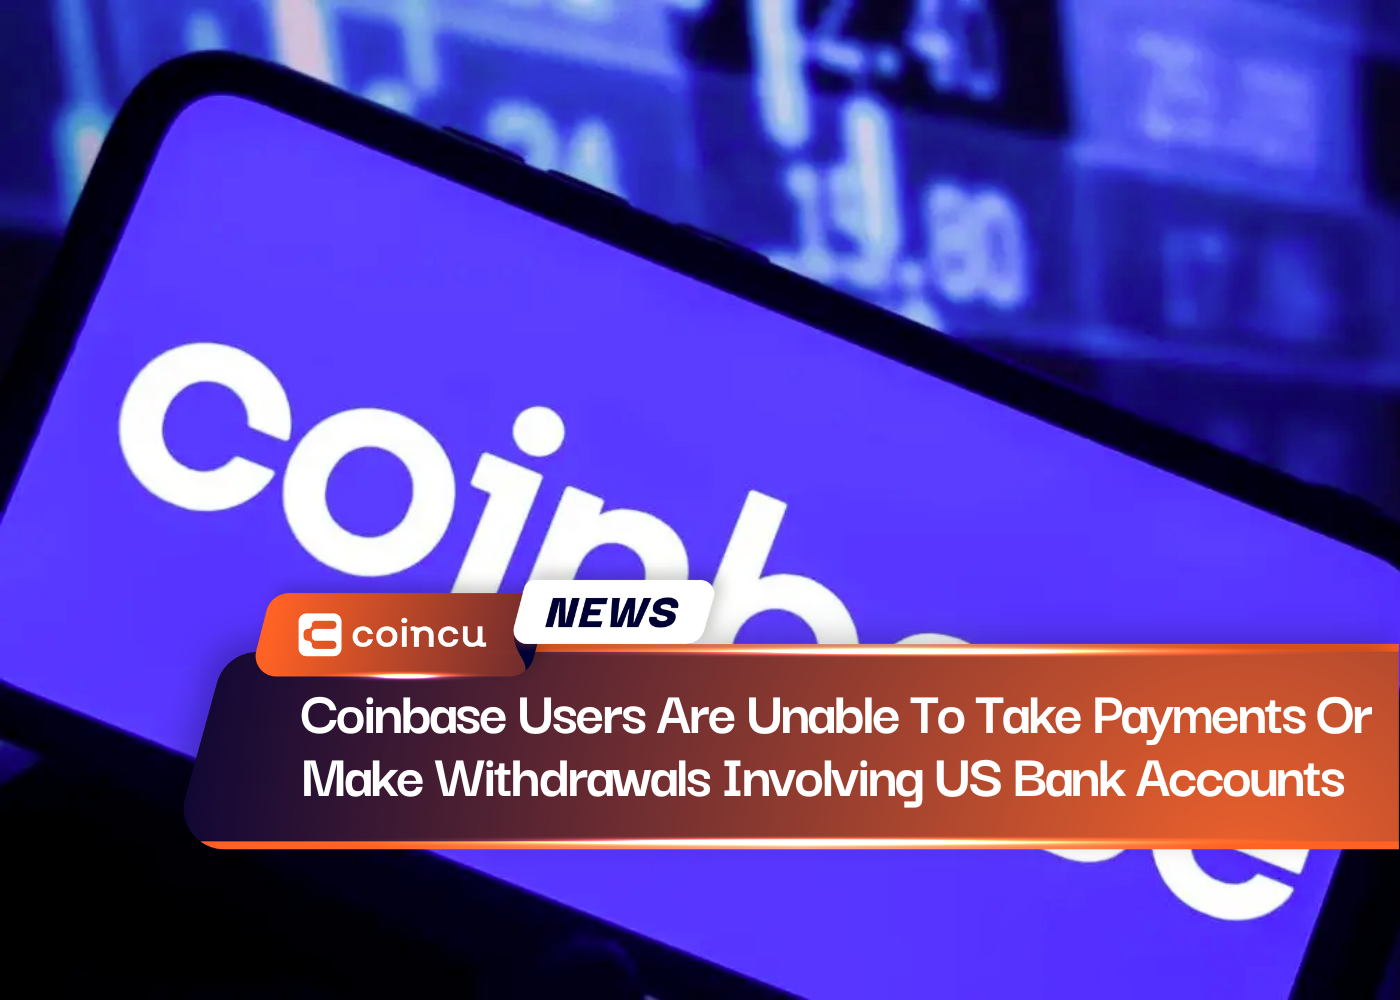 Os usuários da Coinbase não podem receber pagamentos ou fazer retiradas envolvendo contas bancárias nos EUA